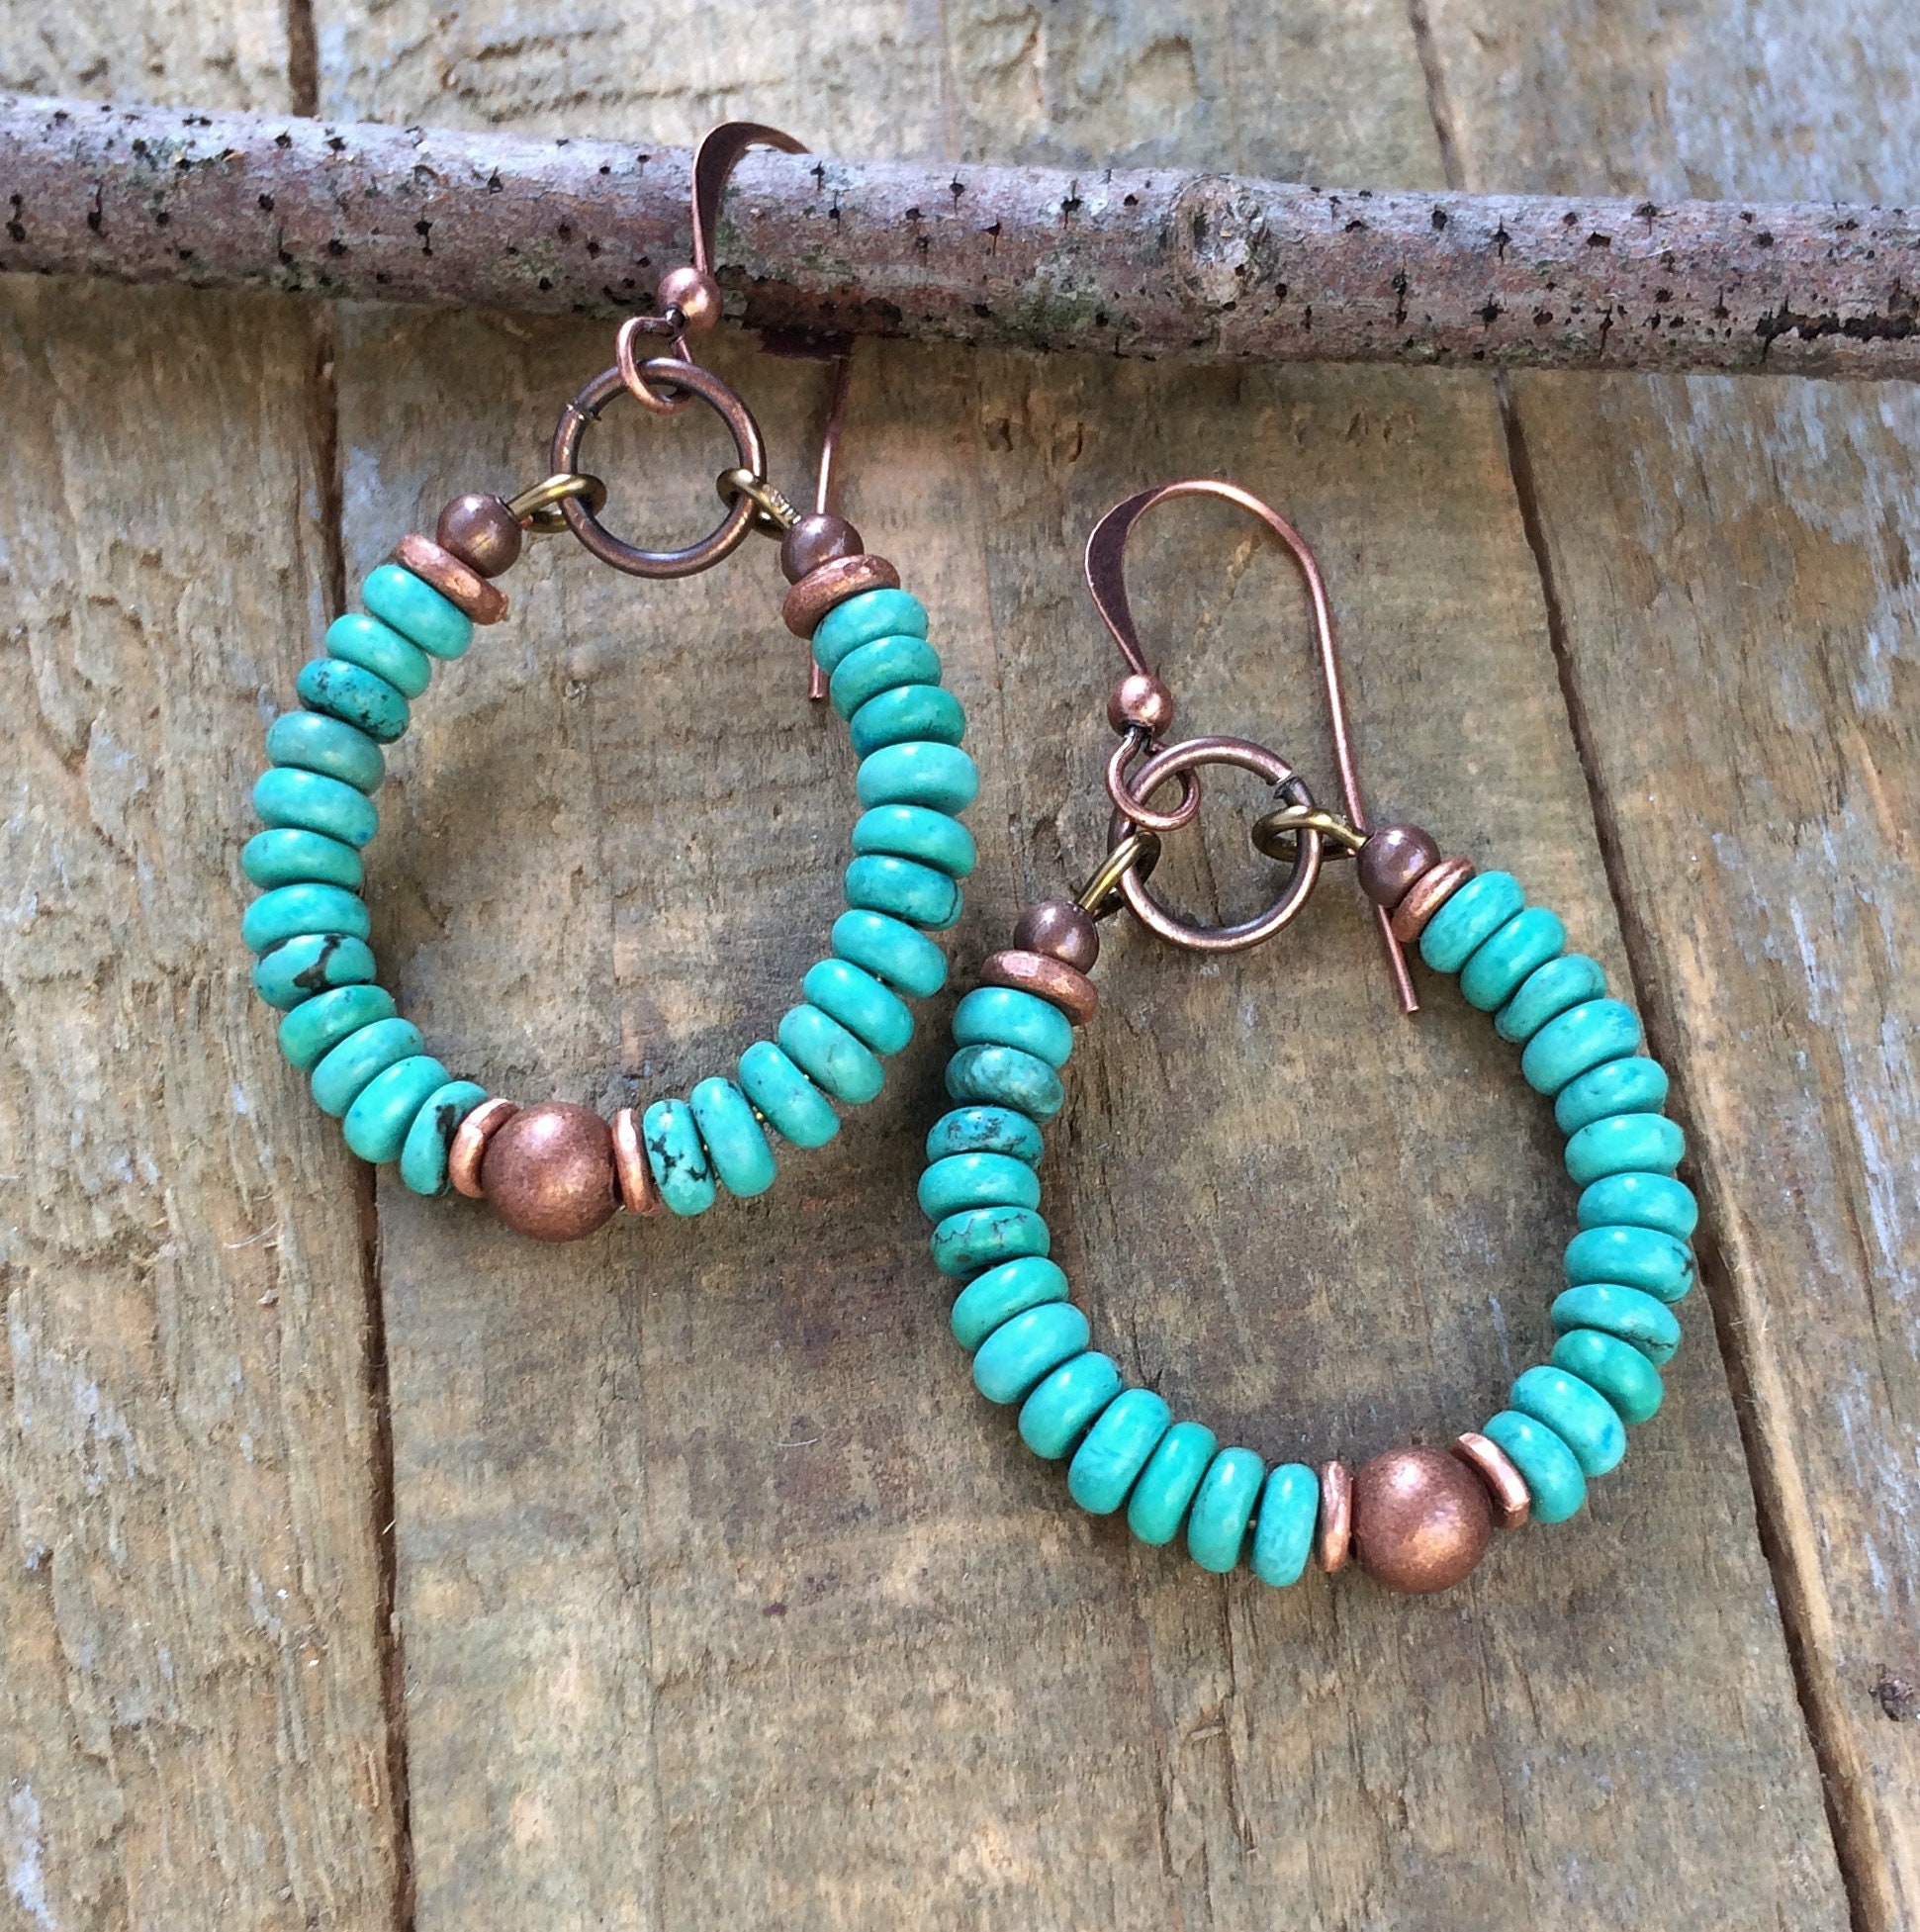 Turquoise Earrings Genuine Turquoise Hoop Earrings Copper - Etsy